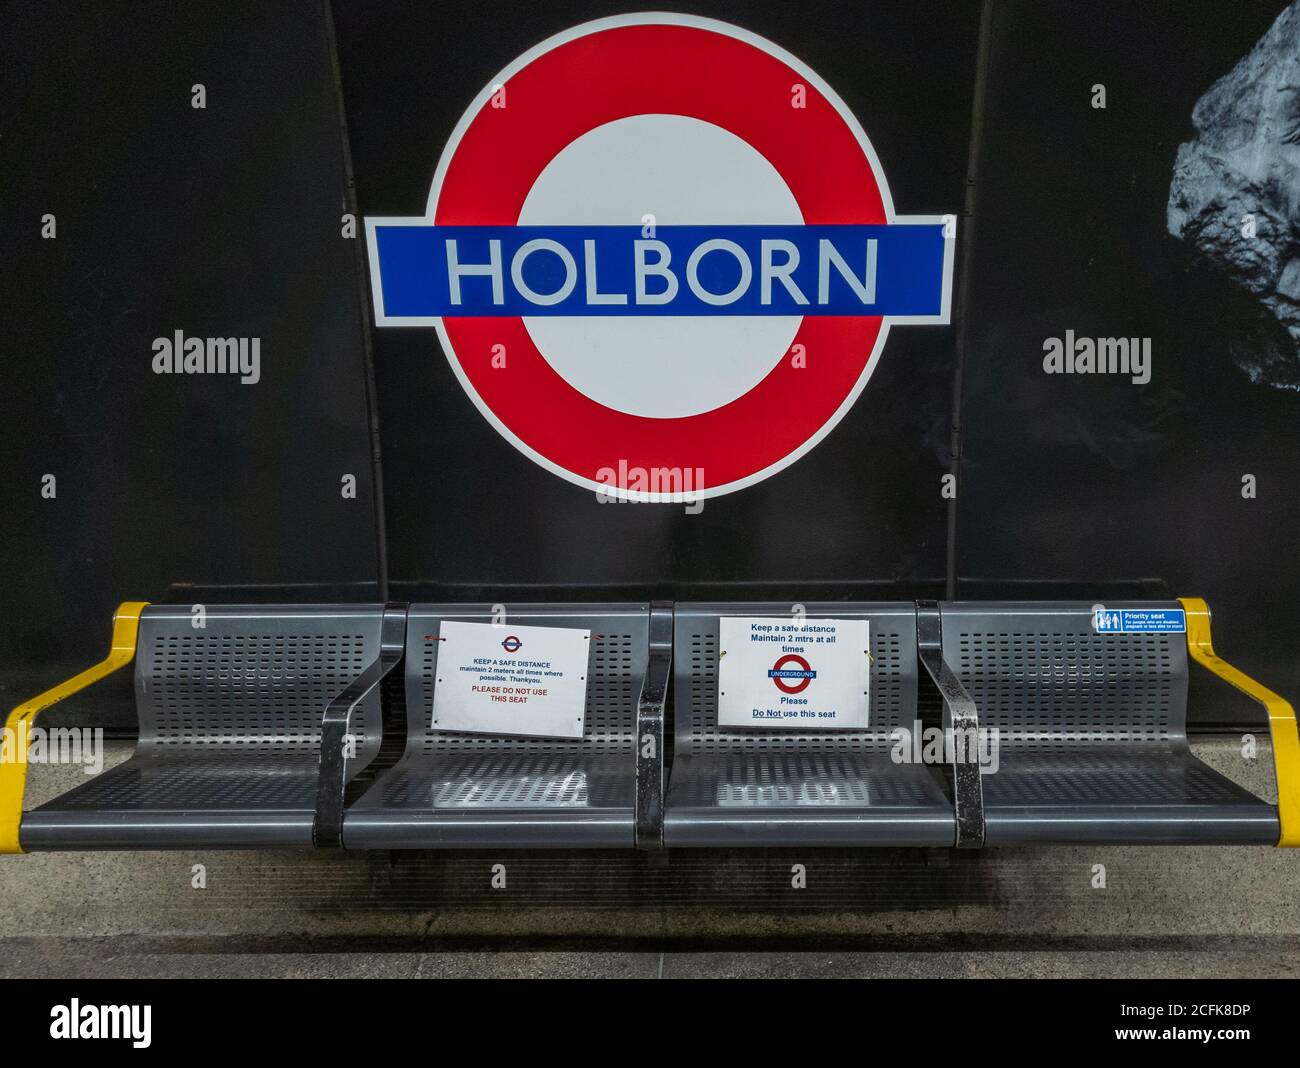 Avisos de distanciamiento social adjuntos a los asientos en la plataforma de la estación de metro Holborn London. Foto de stock